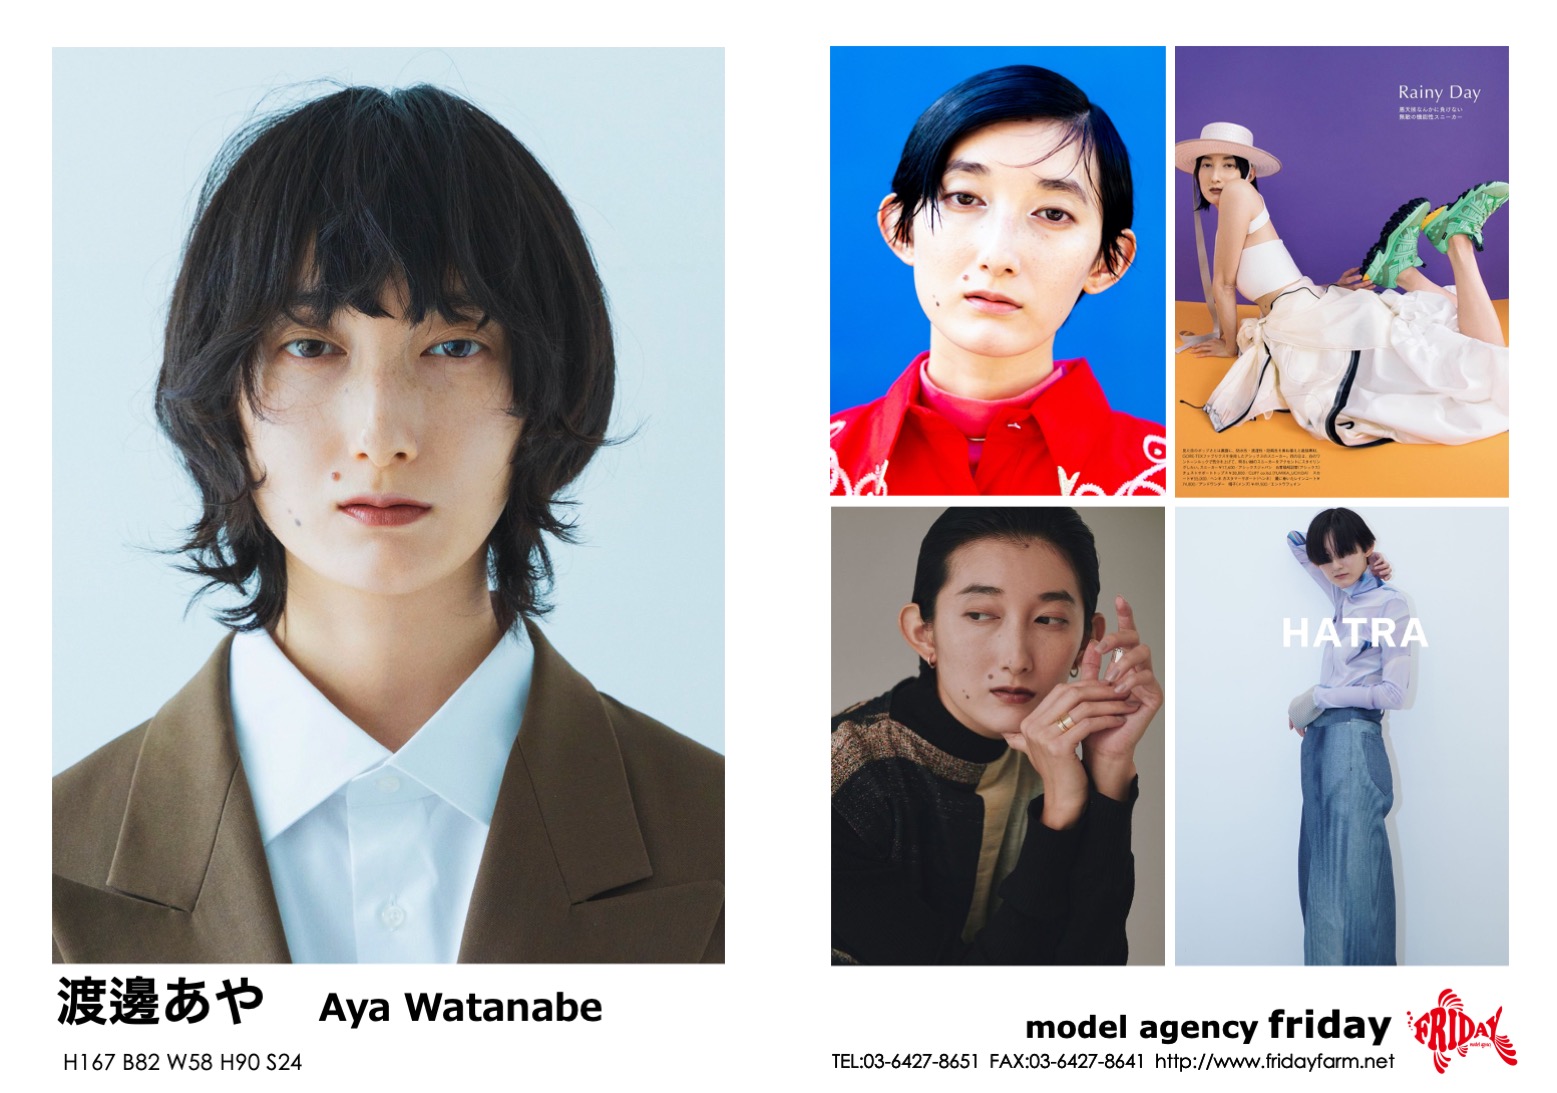 渡邊あや - Aya Watanabe | model agency friday